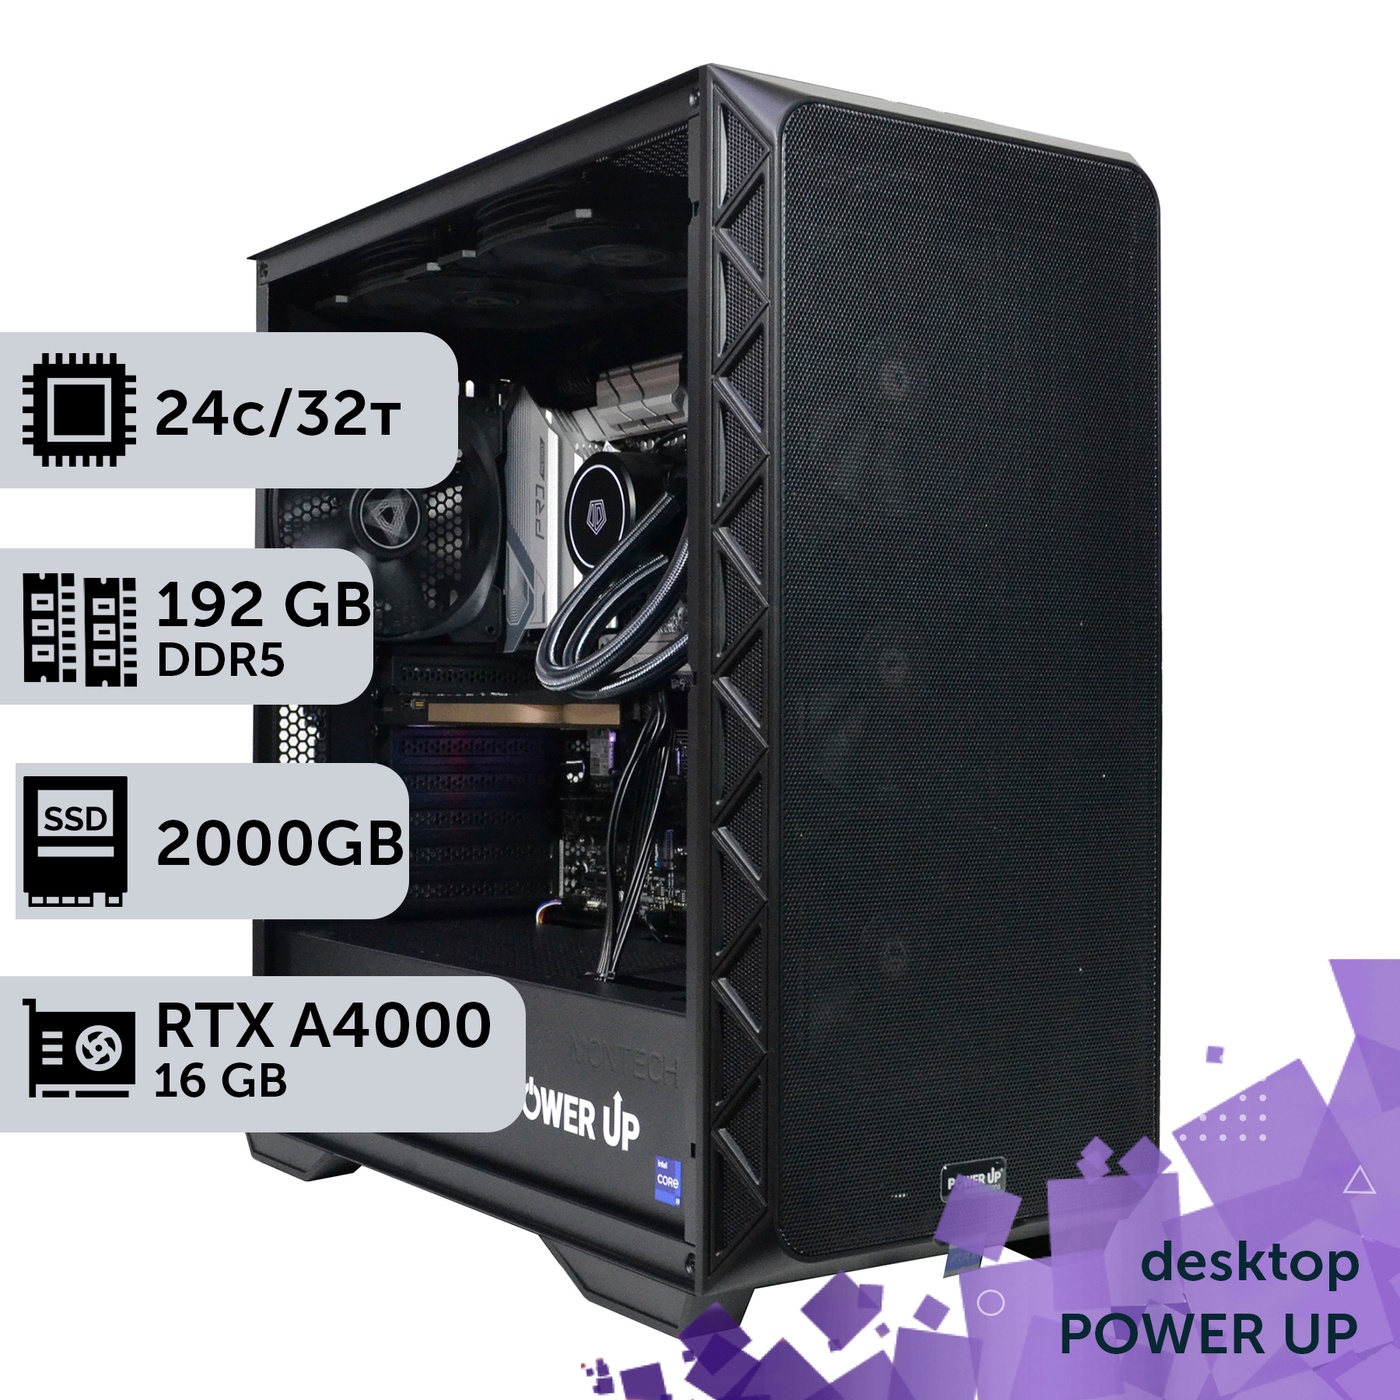 Рабочая станция PowerUp Desktop #280 Core i9 13900K/192 GB/SSD 2TB/NVIDIA Quadro RTX A4000 16GB